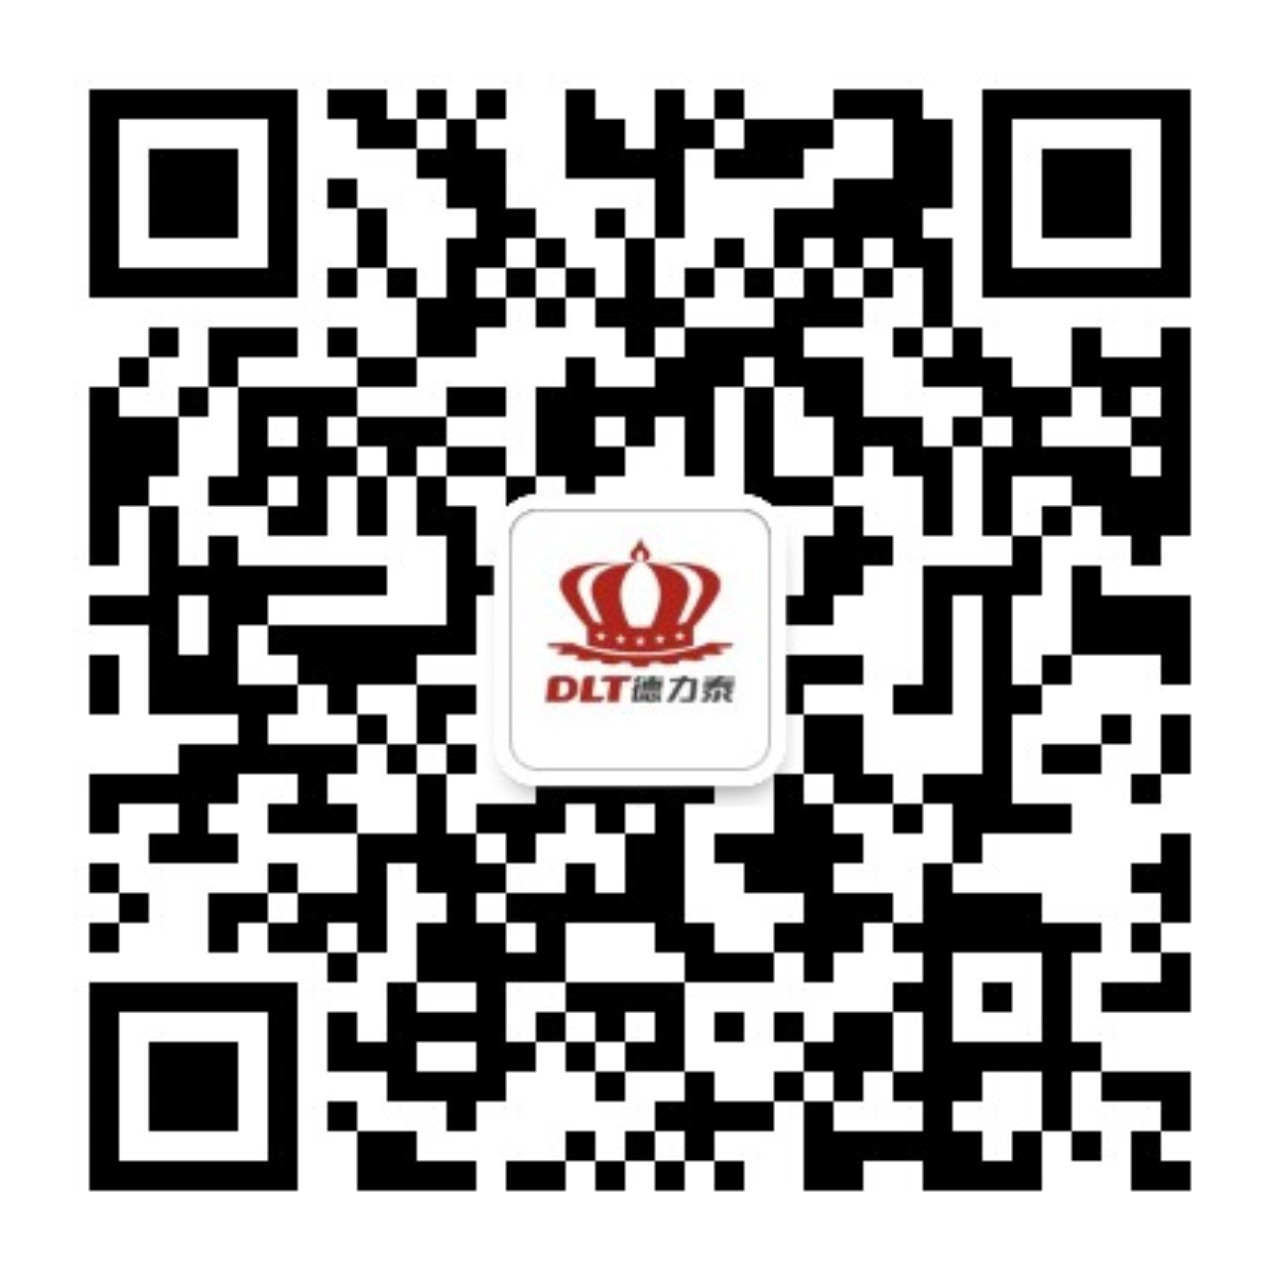 关于当前产品tcg彩票app·(中国)官方网站的成功案例等相关图片